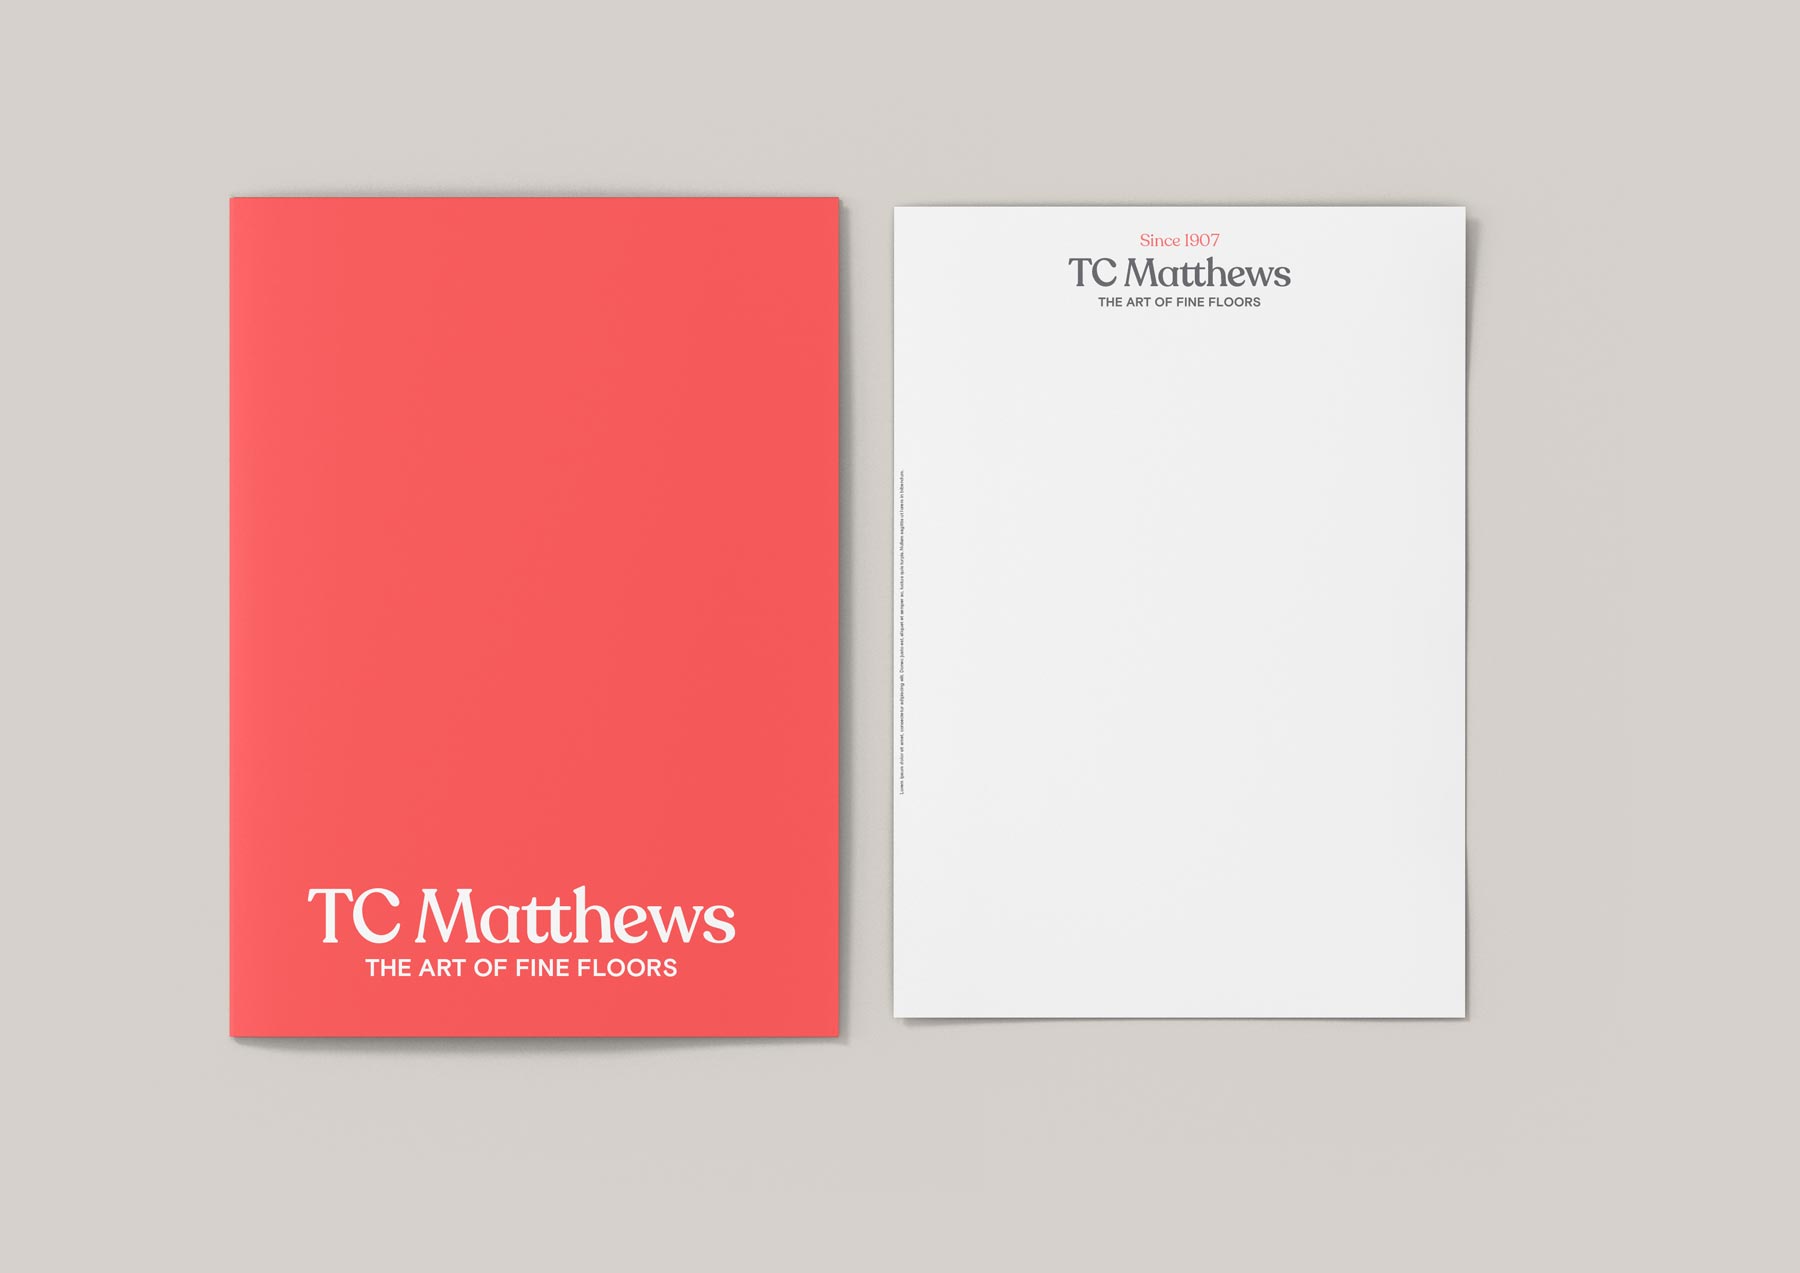 Print media design for branding of TC Matthews